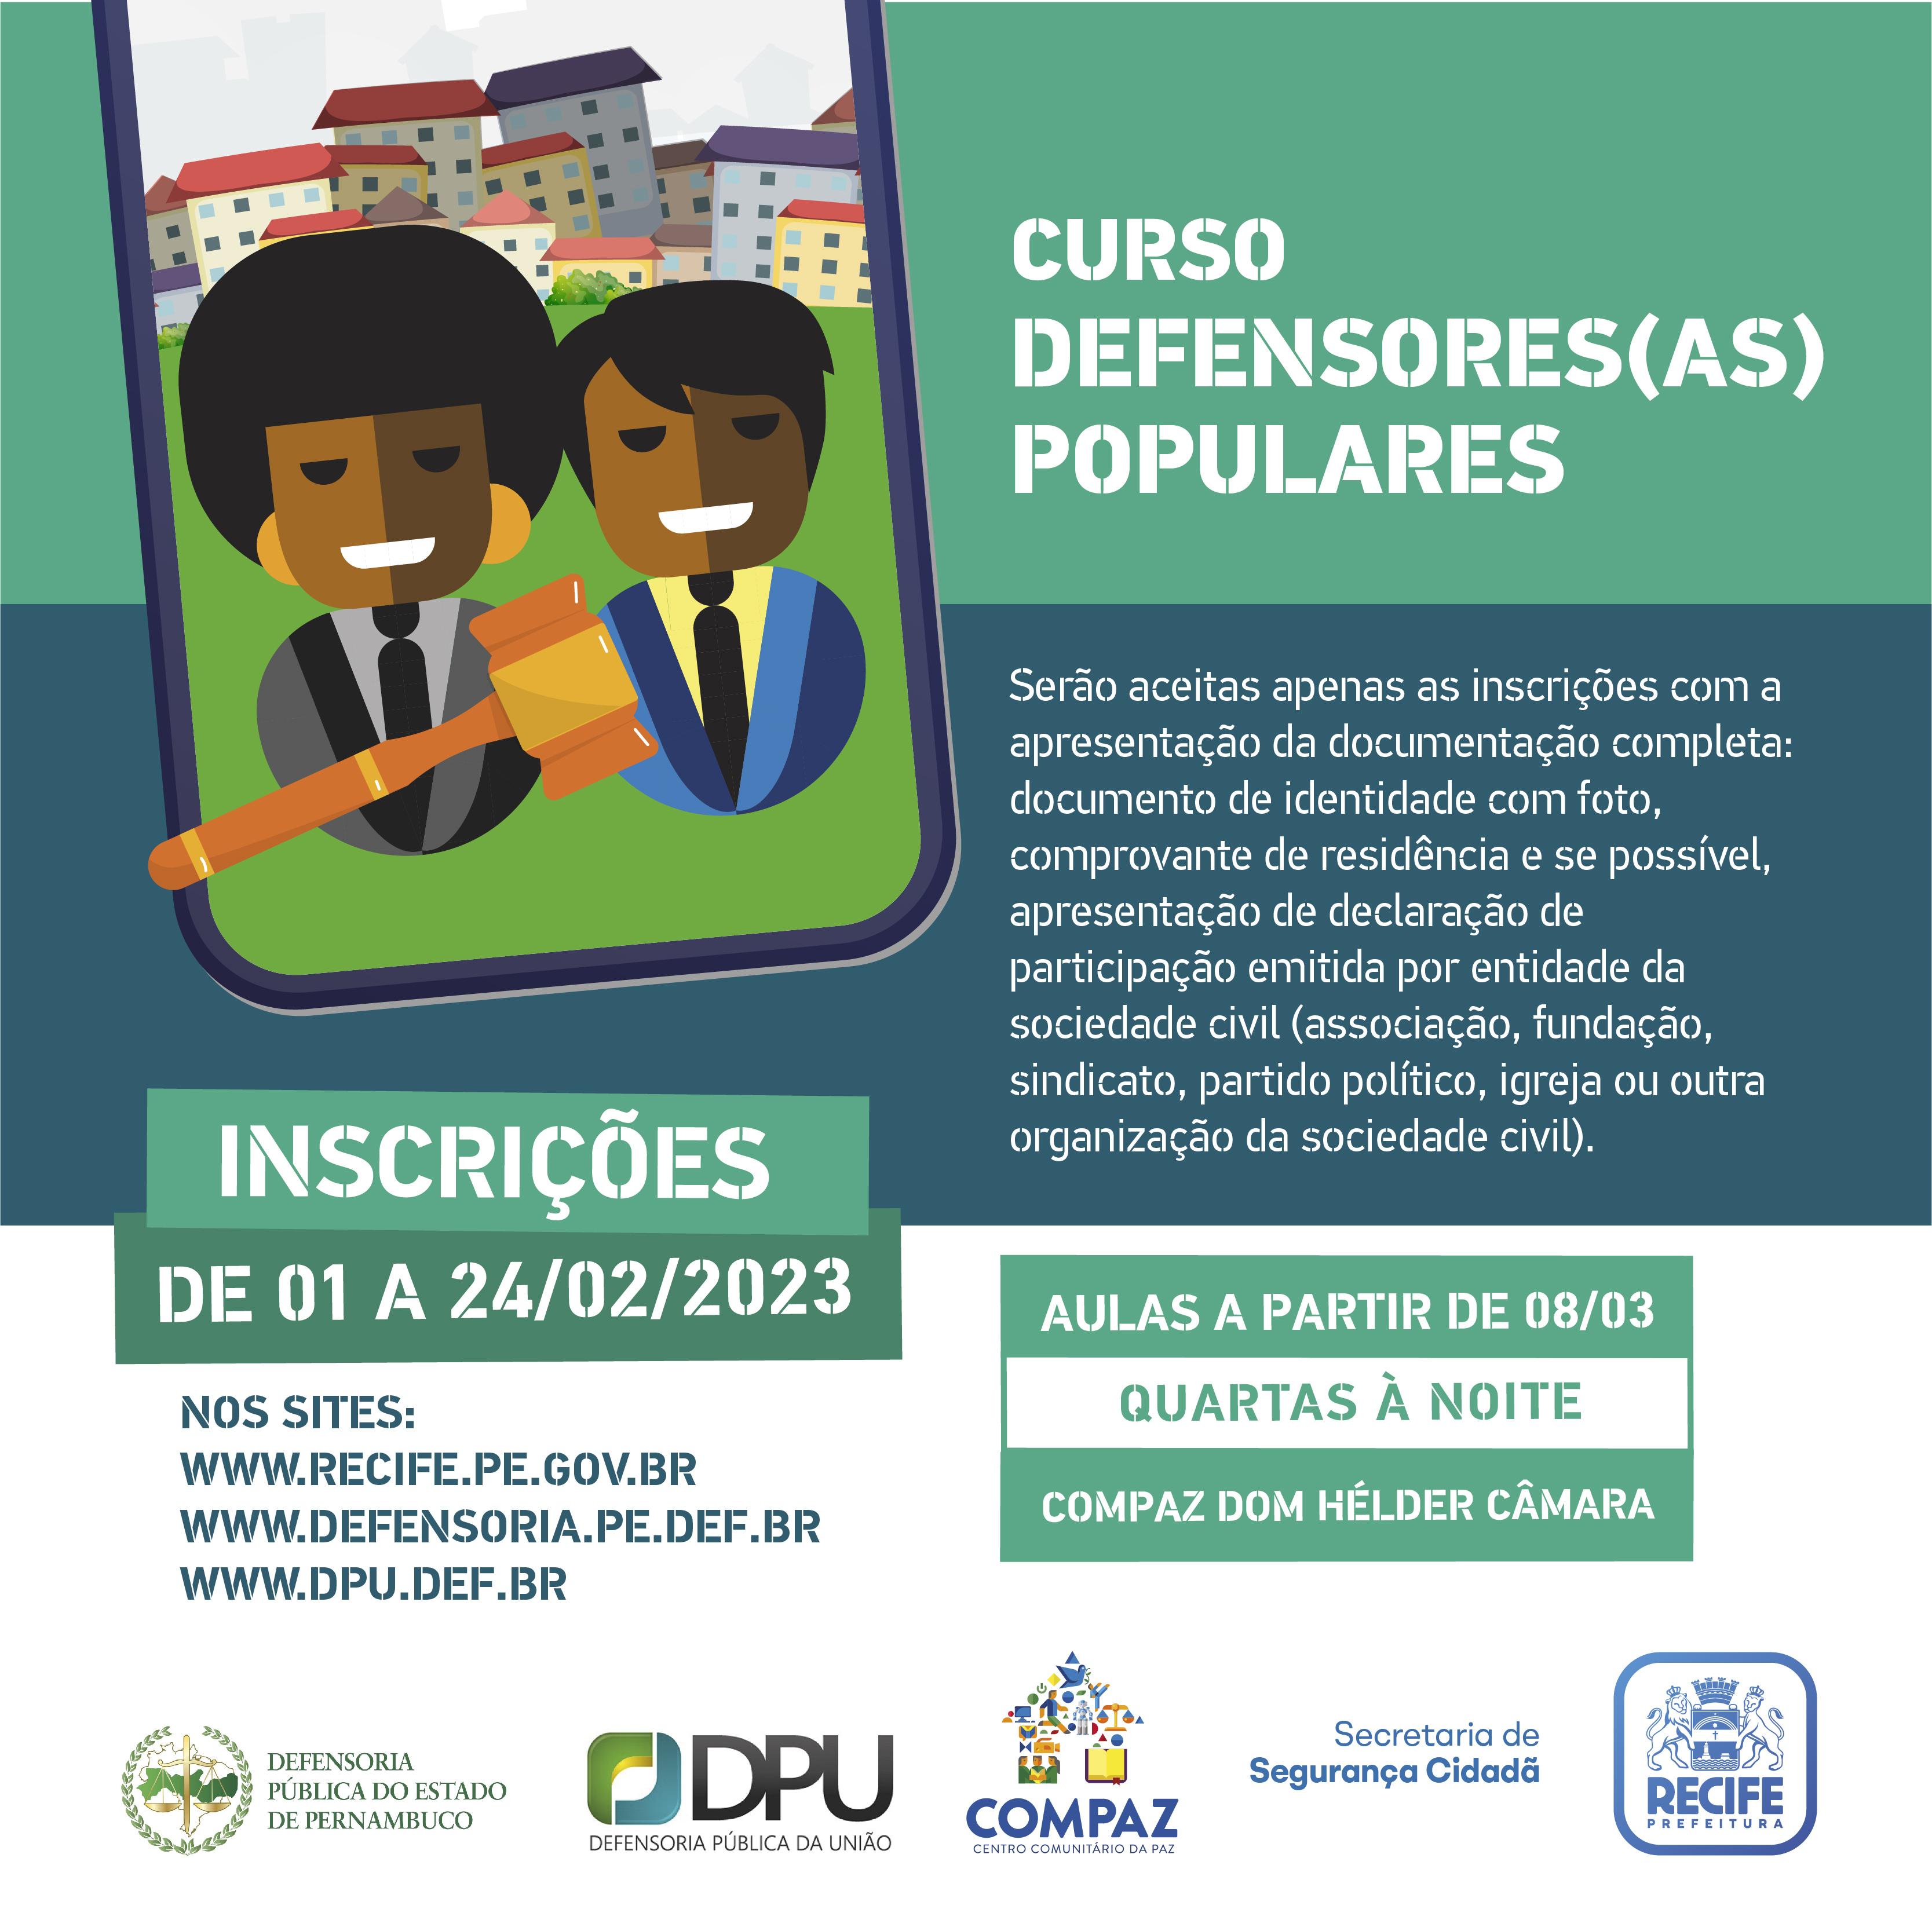 Cartaz com informações sobre o Curso Defensores Populares, edição 2023.